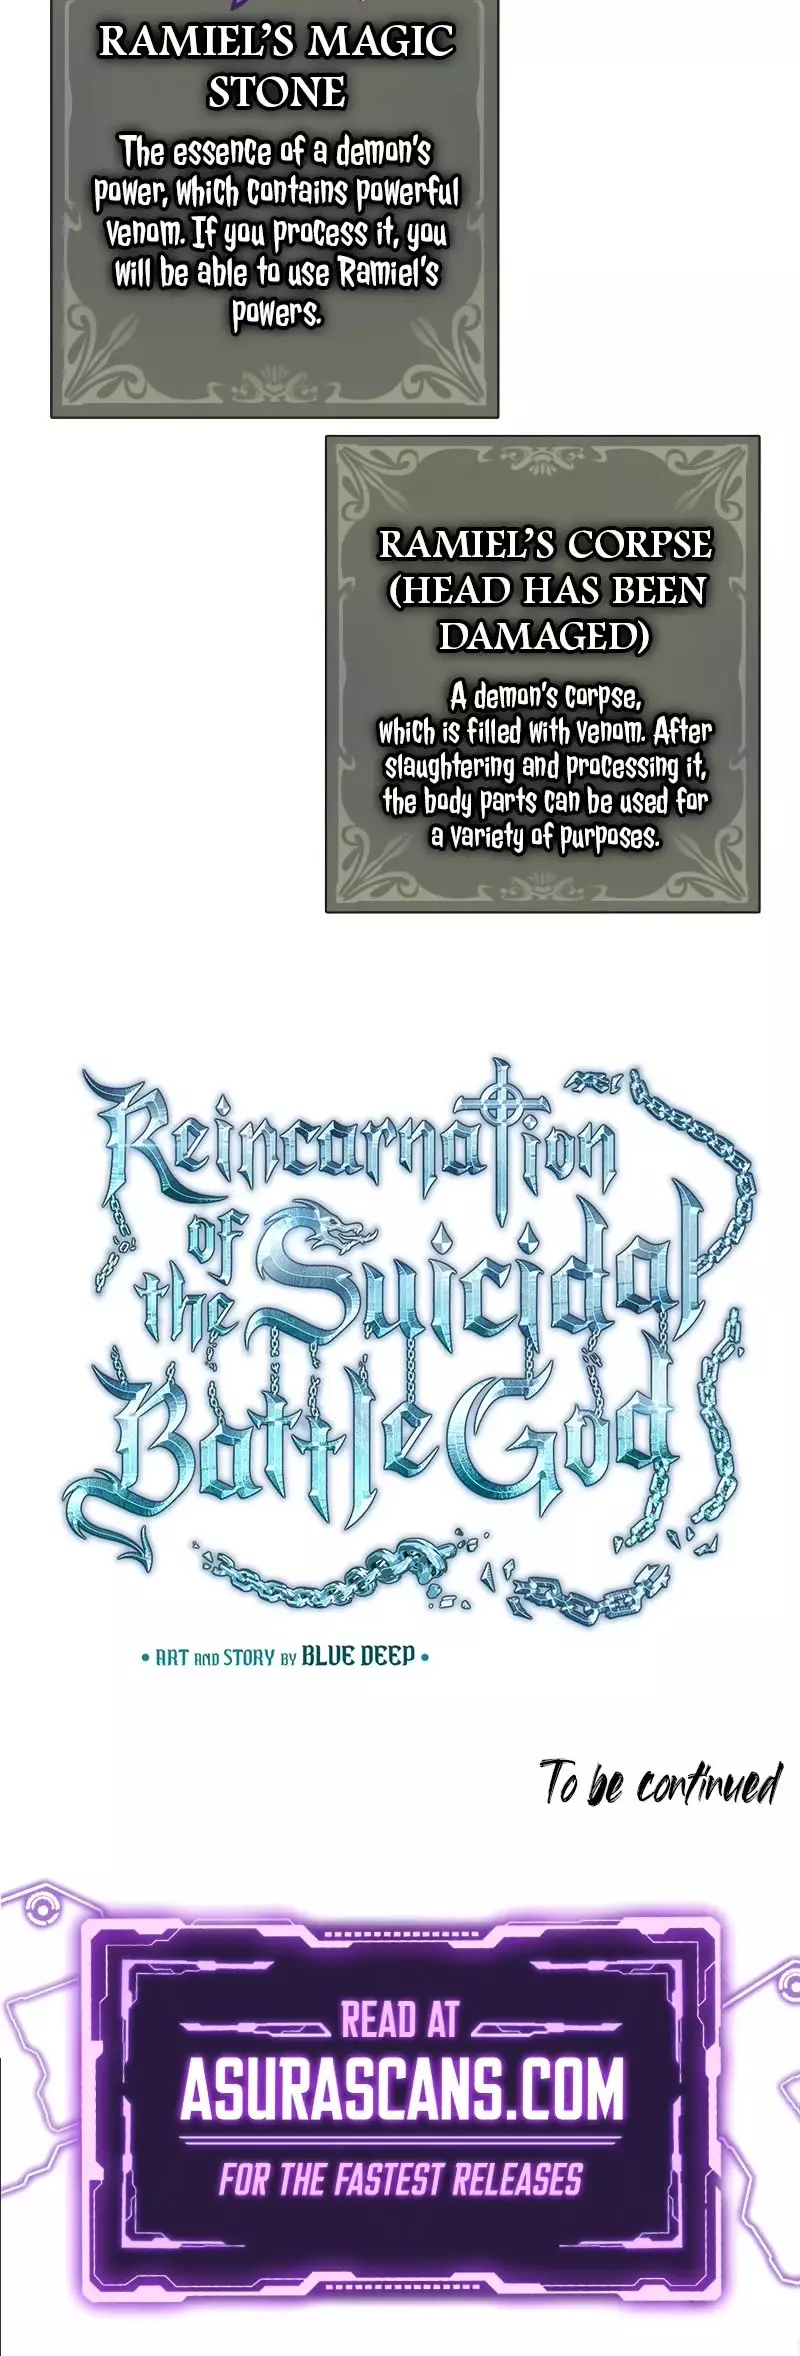 Reincarnation Of The Suicidal Battle God - 70 page 55-7e736c17